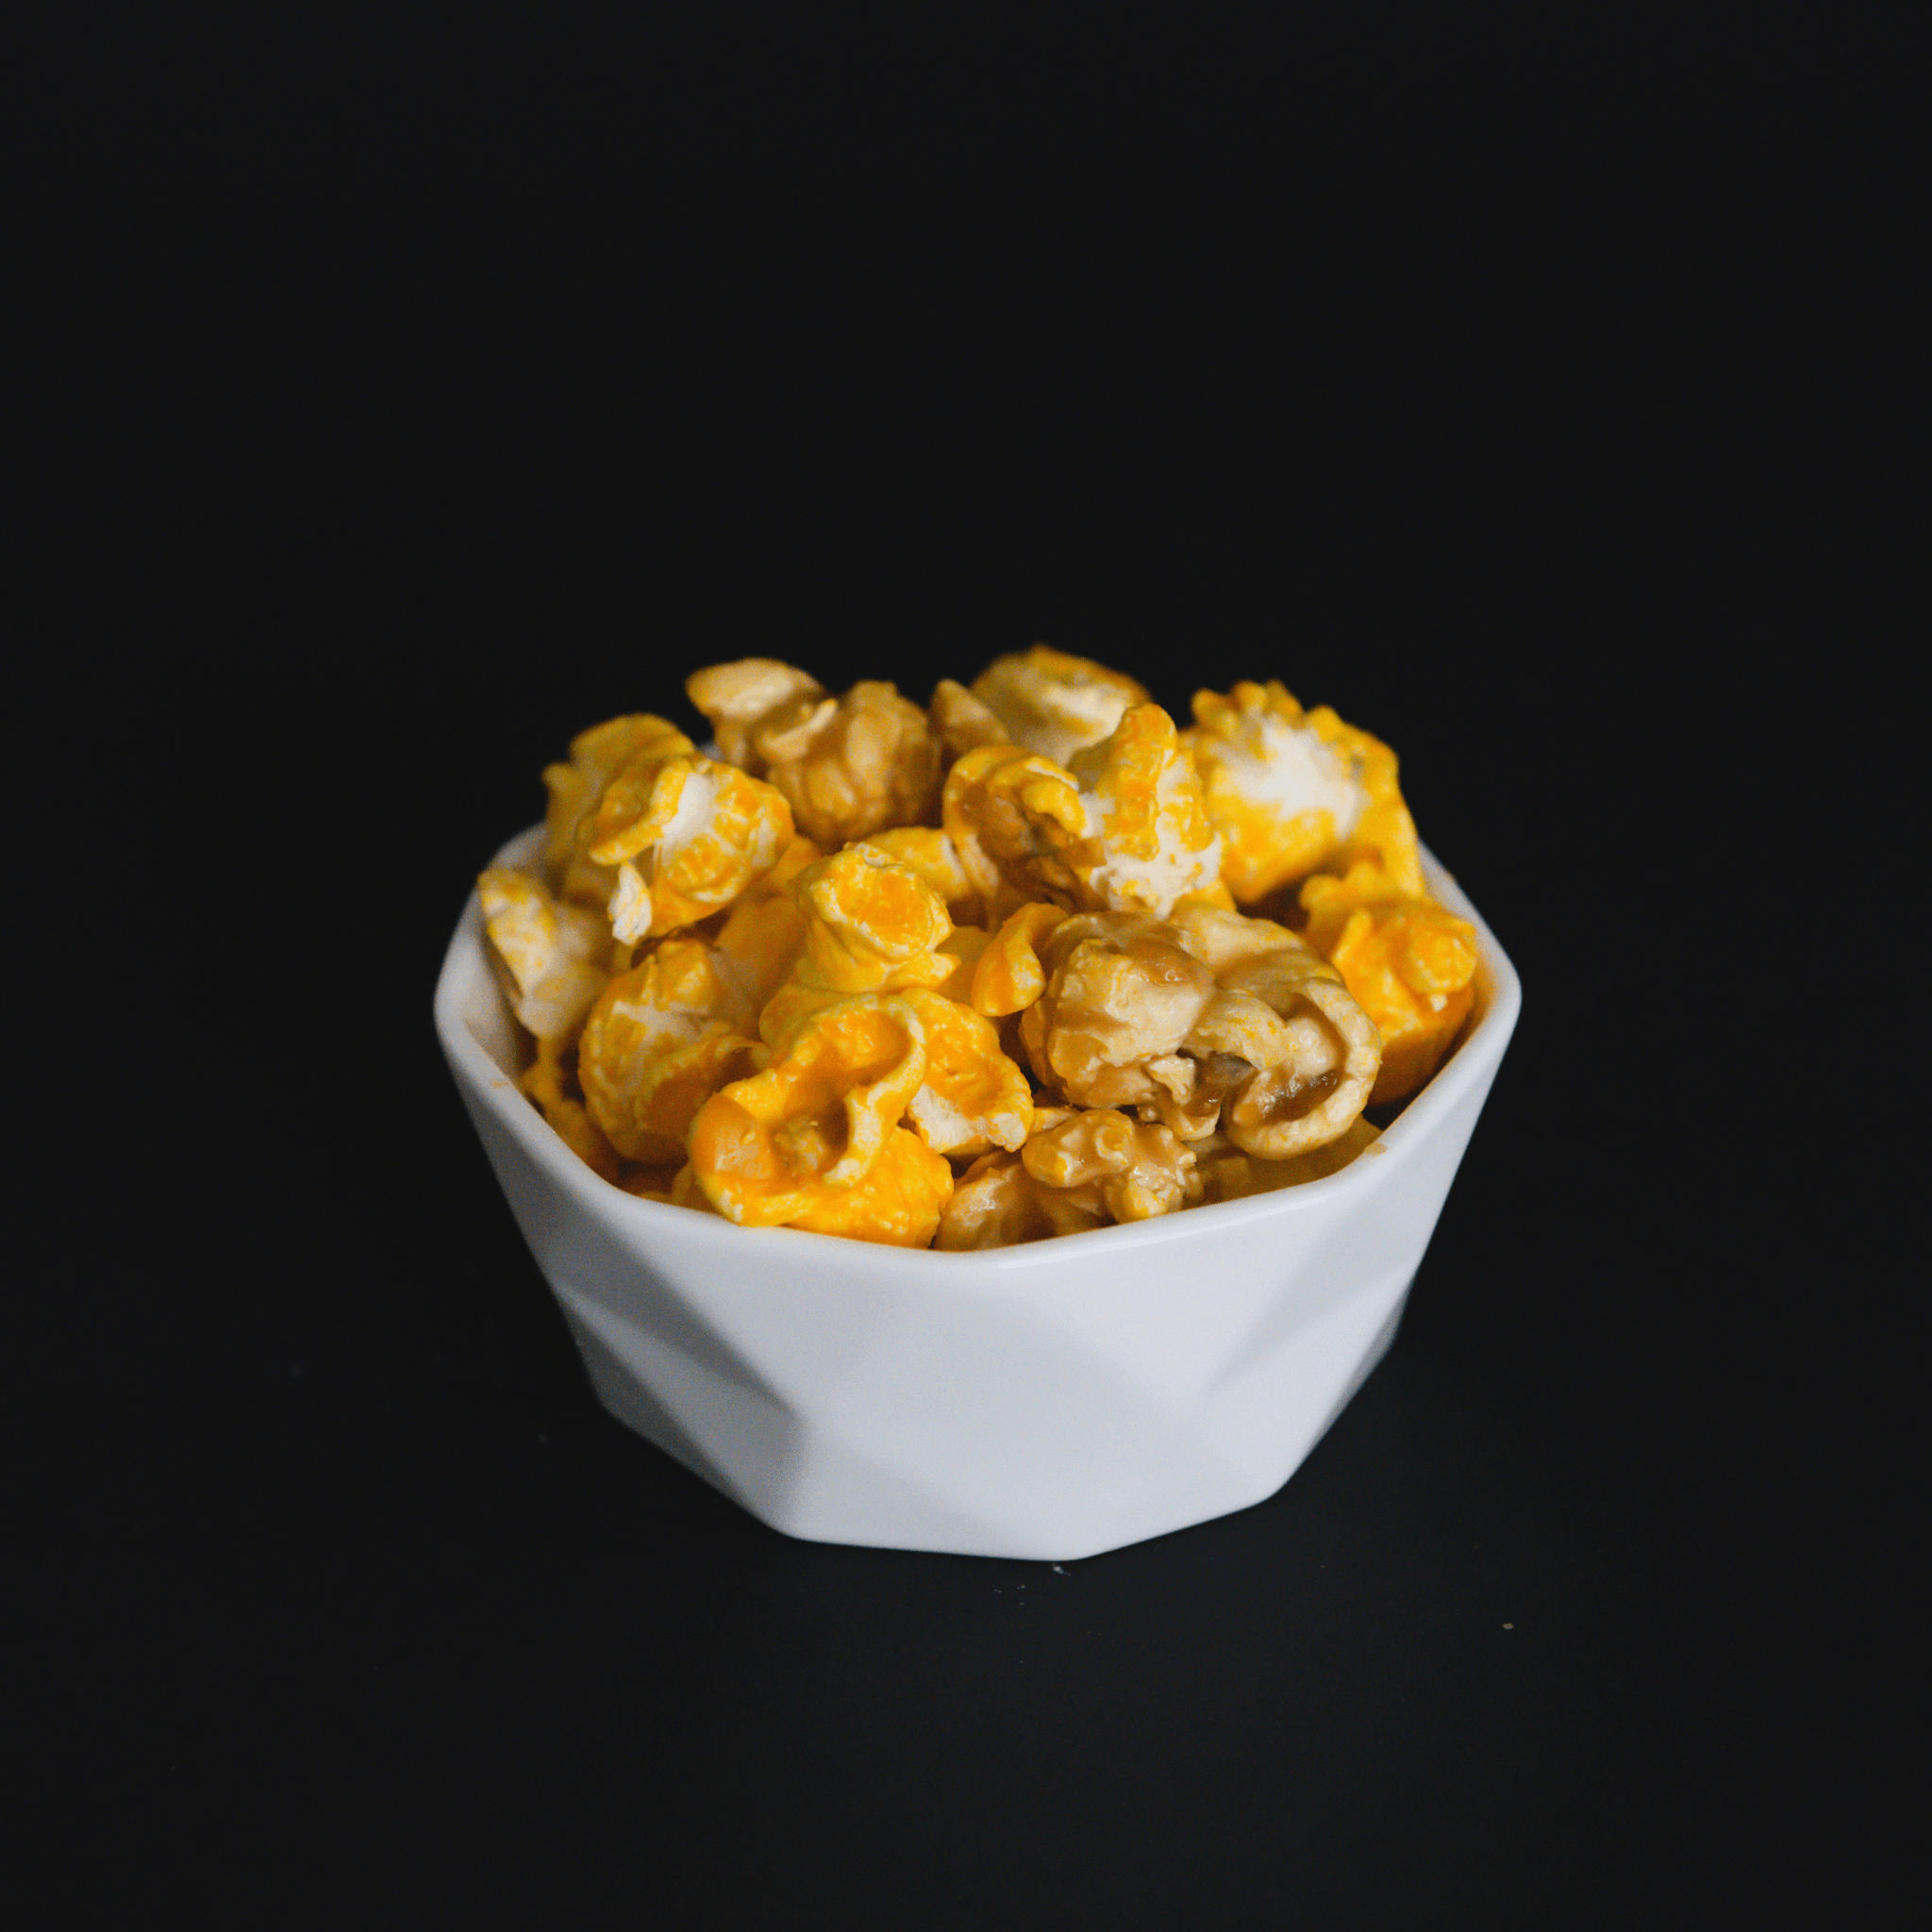 Caramel + Cheddar Popcorn